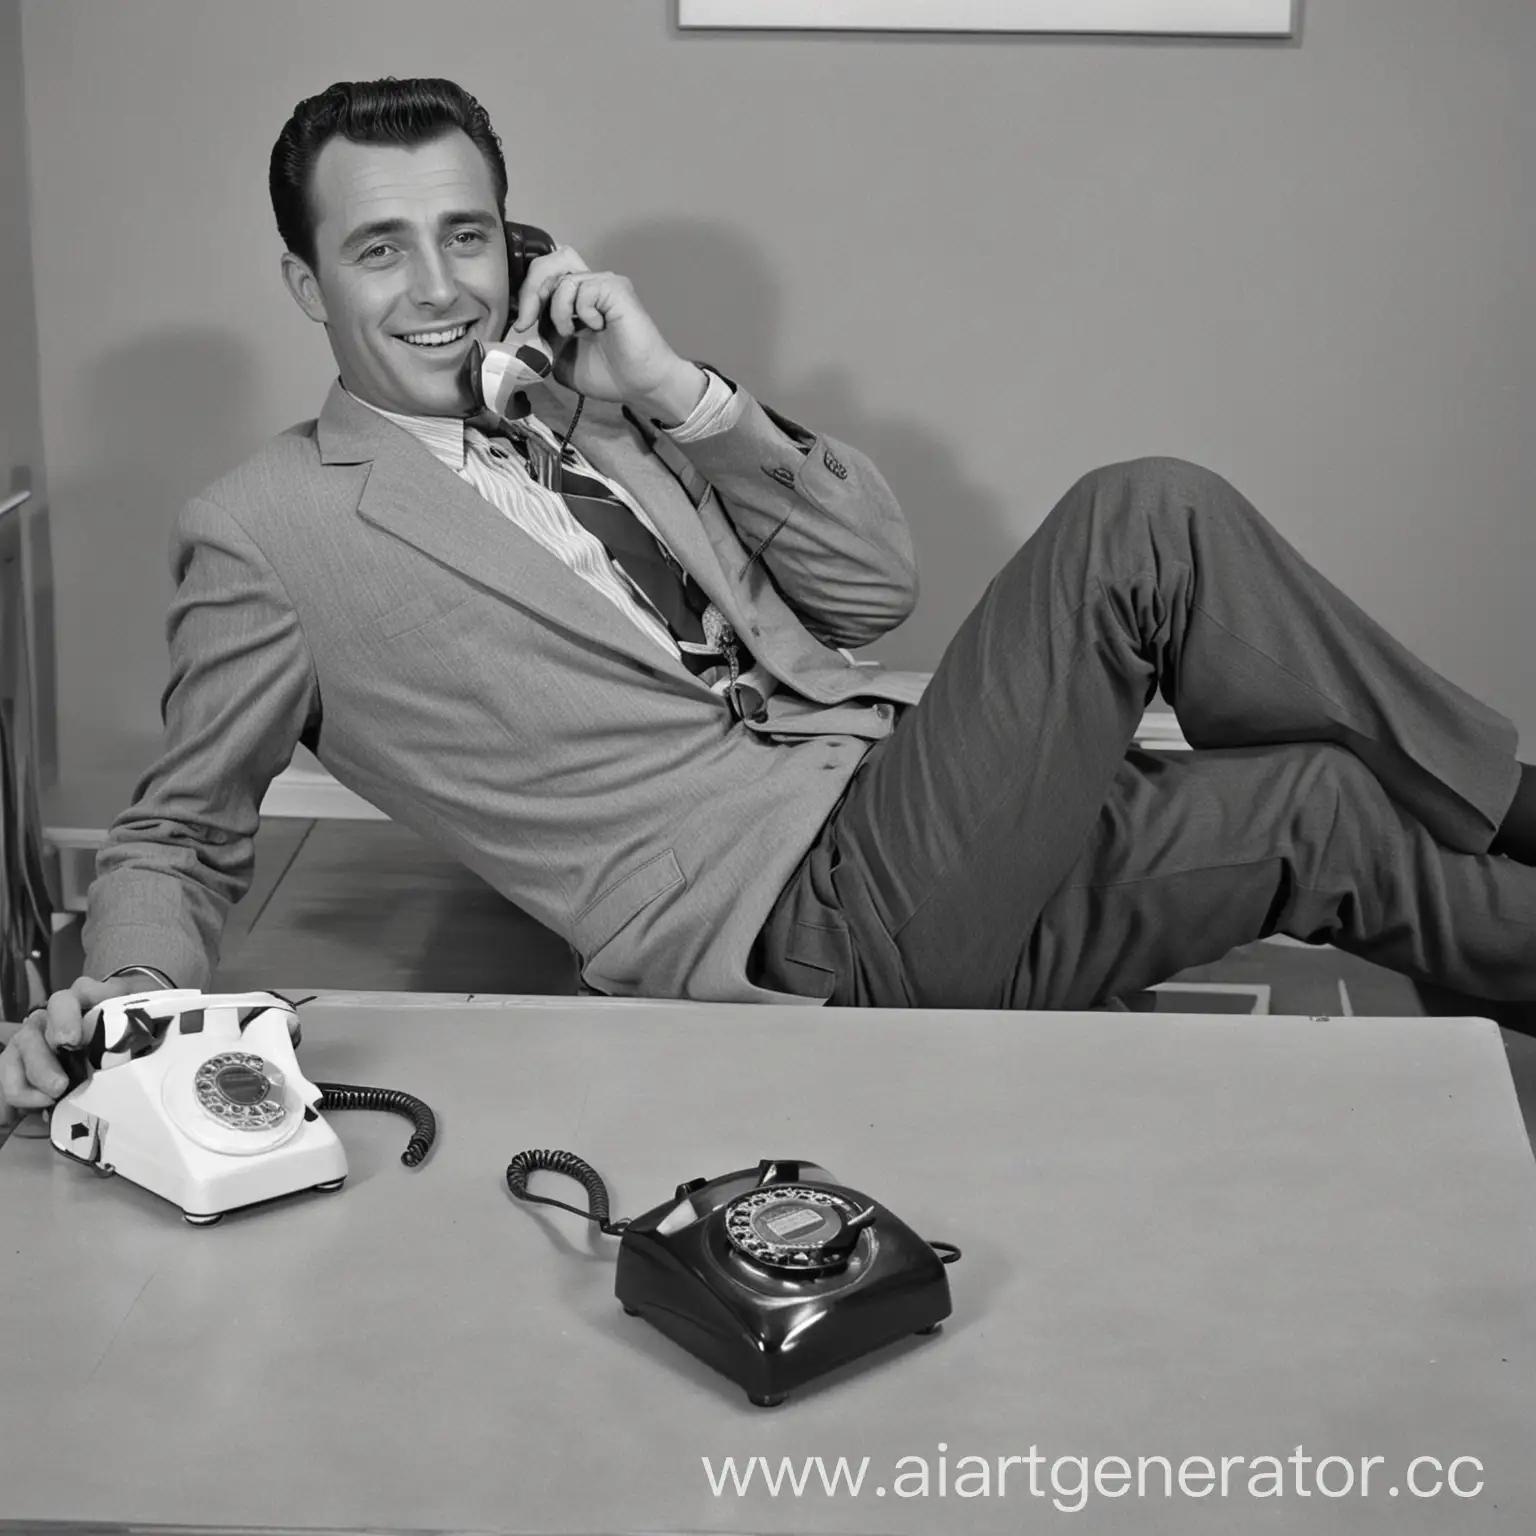 Мужчина в 1960 общается по телефону закинув ноги на стол